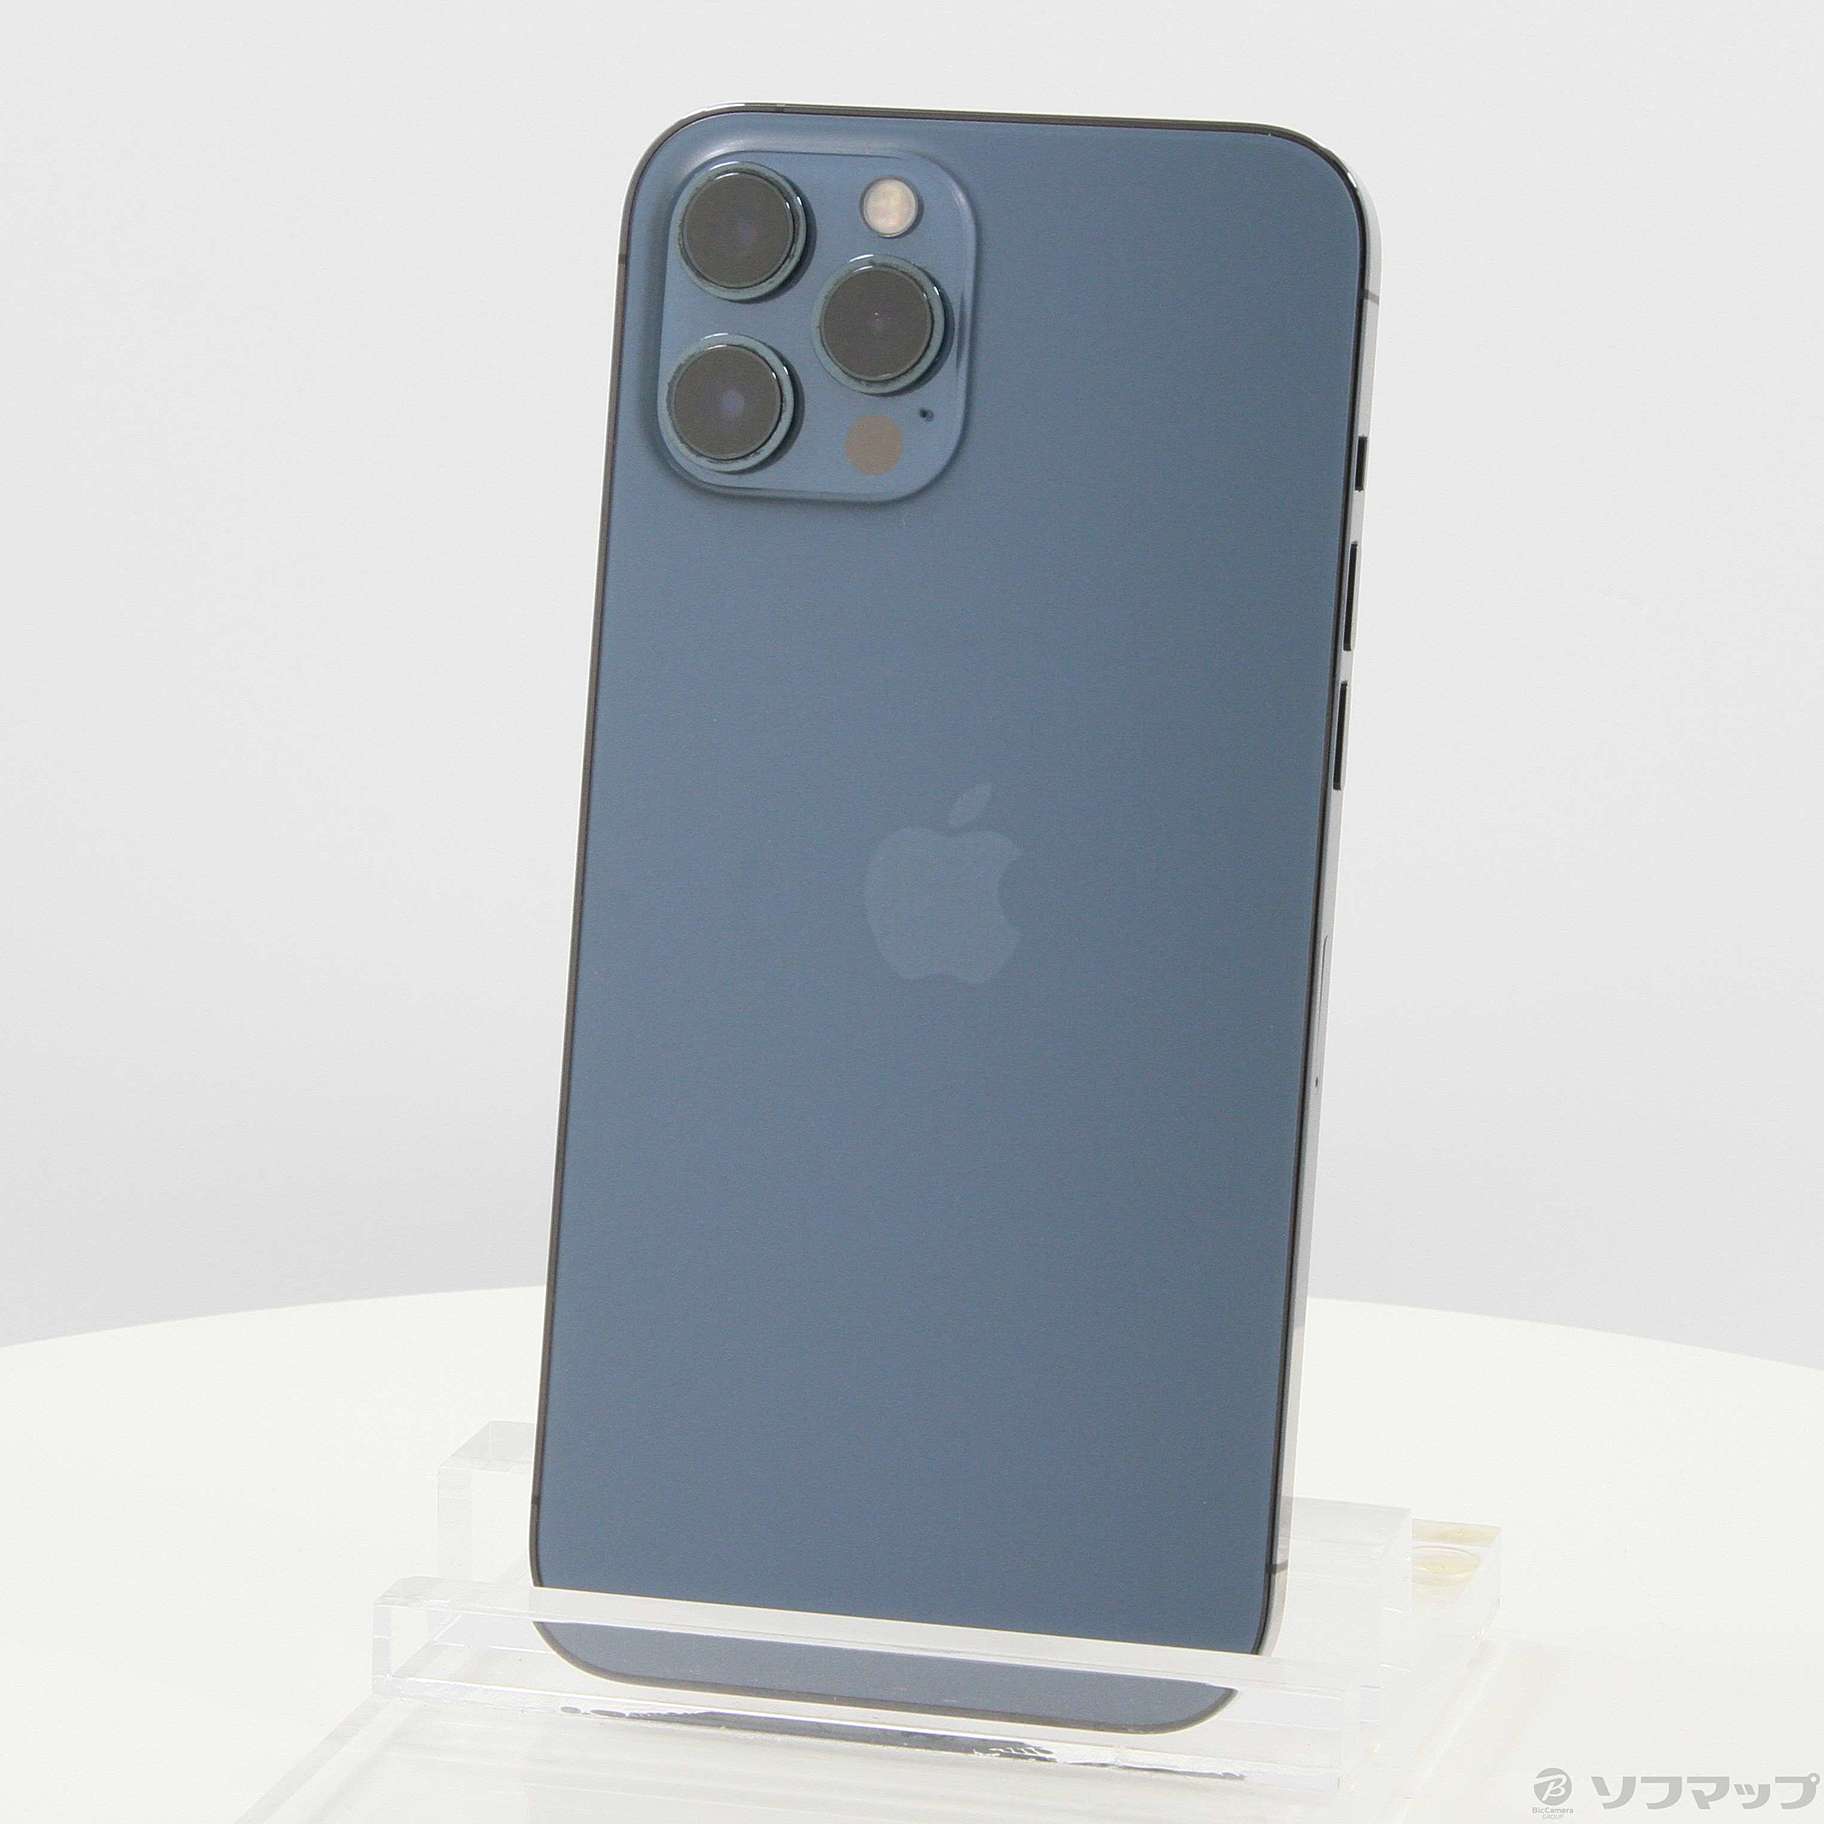 【土日限定値下げ】【超美品】iPhone12 Pro Max 256GB ブルー